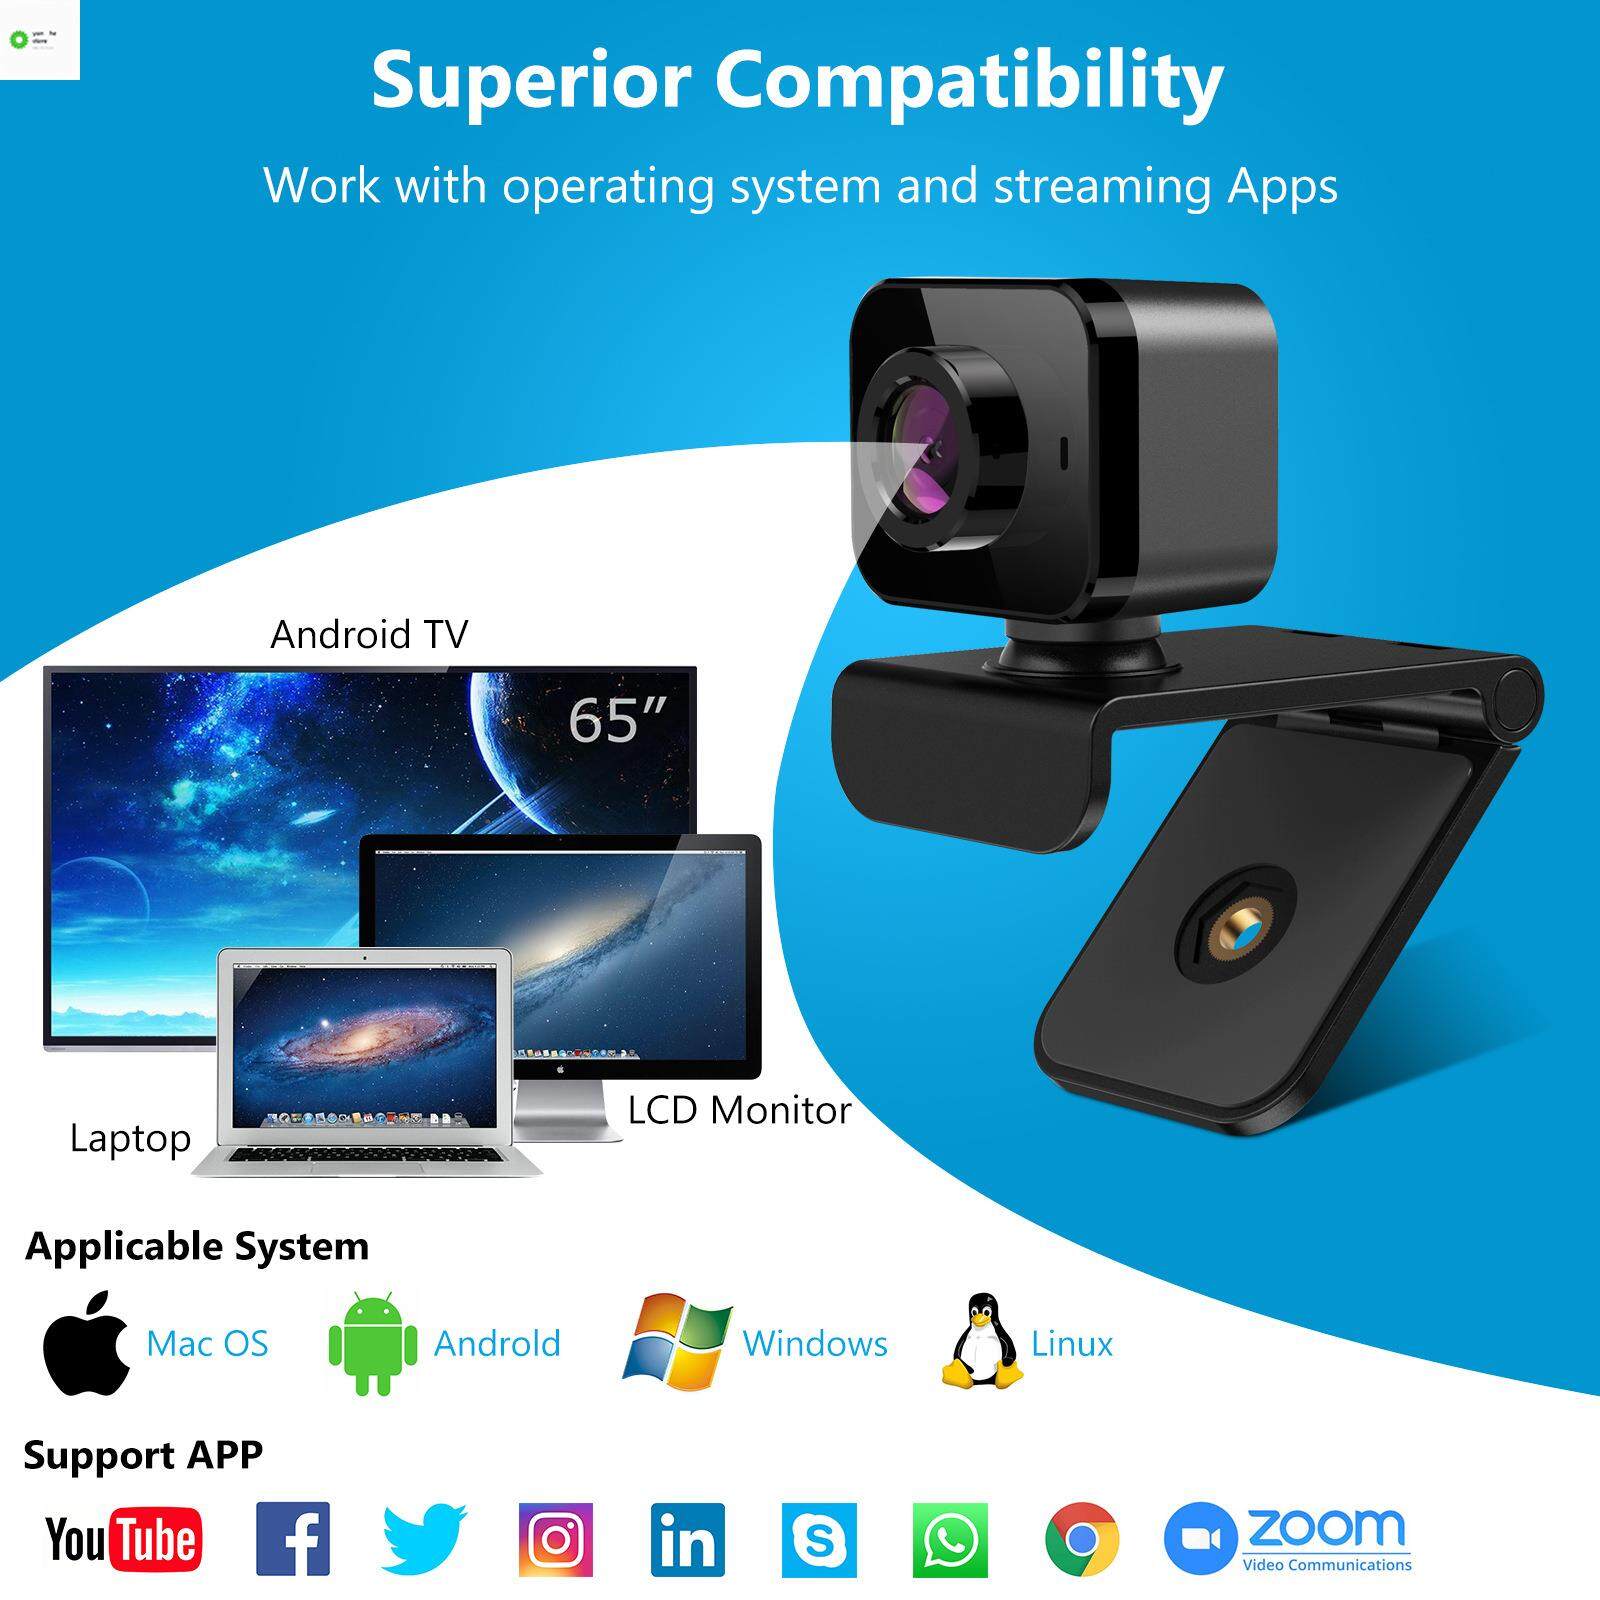 Yanhe cam may tinh bàn webcam hồng ngoại camera ip 60fps camera mini kết nối điện thoại có giây webcam...